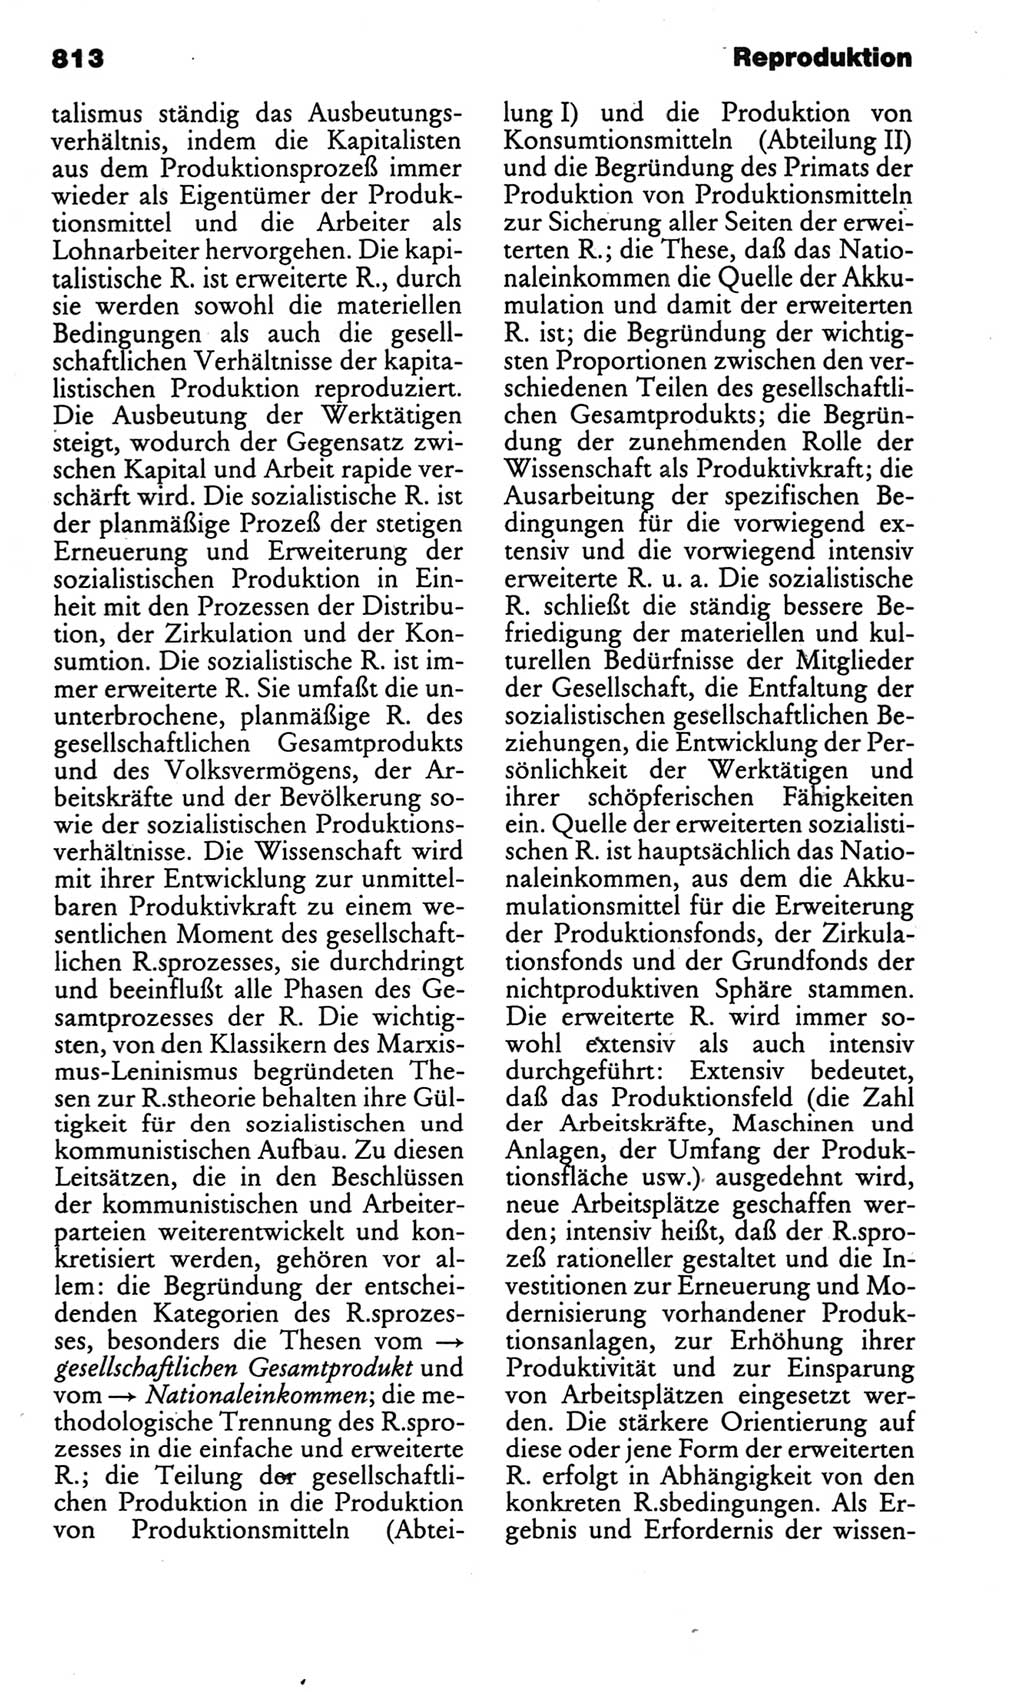 Kleines politisches Wörterbuch [Deutsche Demokratische Republik (DDR)] 1986, Seite 813 (Kl. pol. Wb. DDR 1986, S. 813)